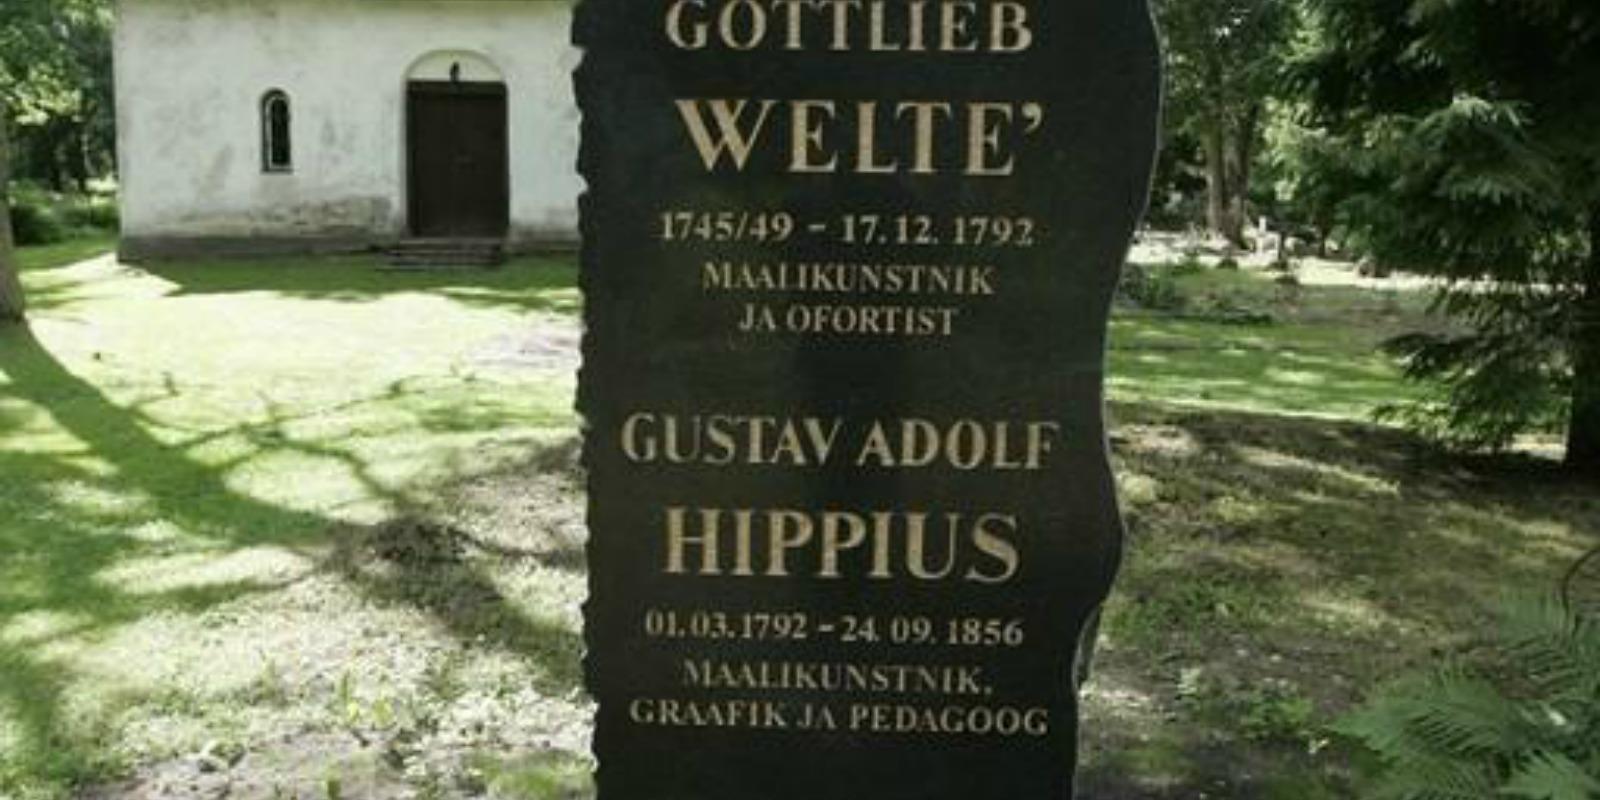 Baltiansaksalaisten taiteilijoiden Gottlieb Weltén ja Gustav Adolf Hippiusen muistokivi Hagerin hautausmaalla